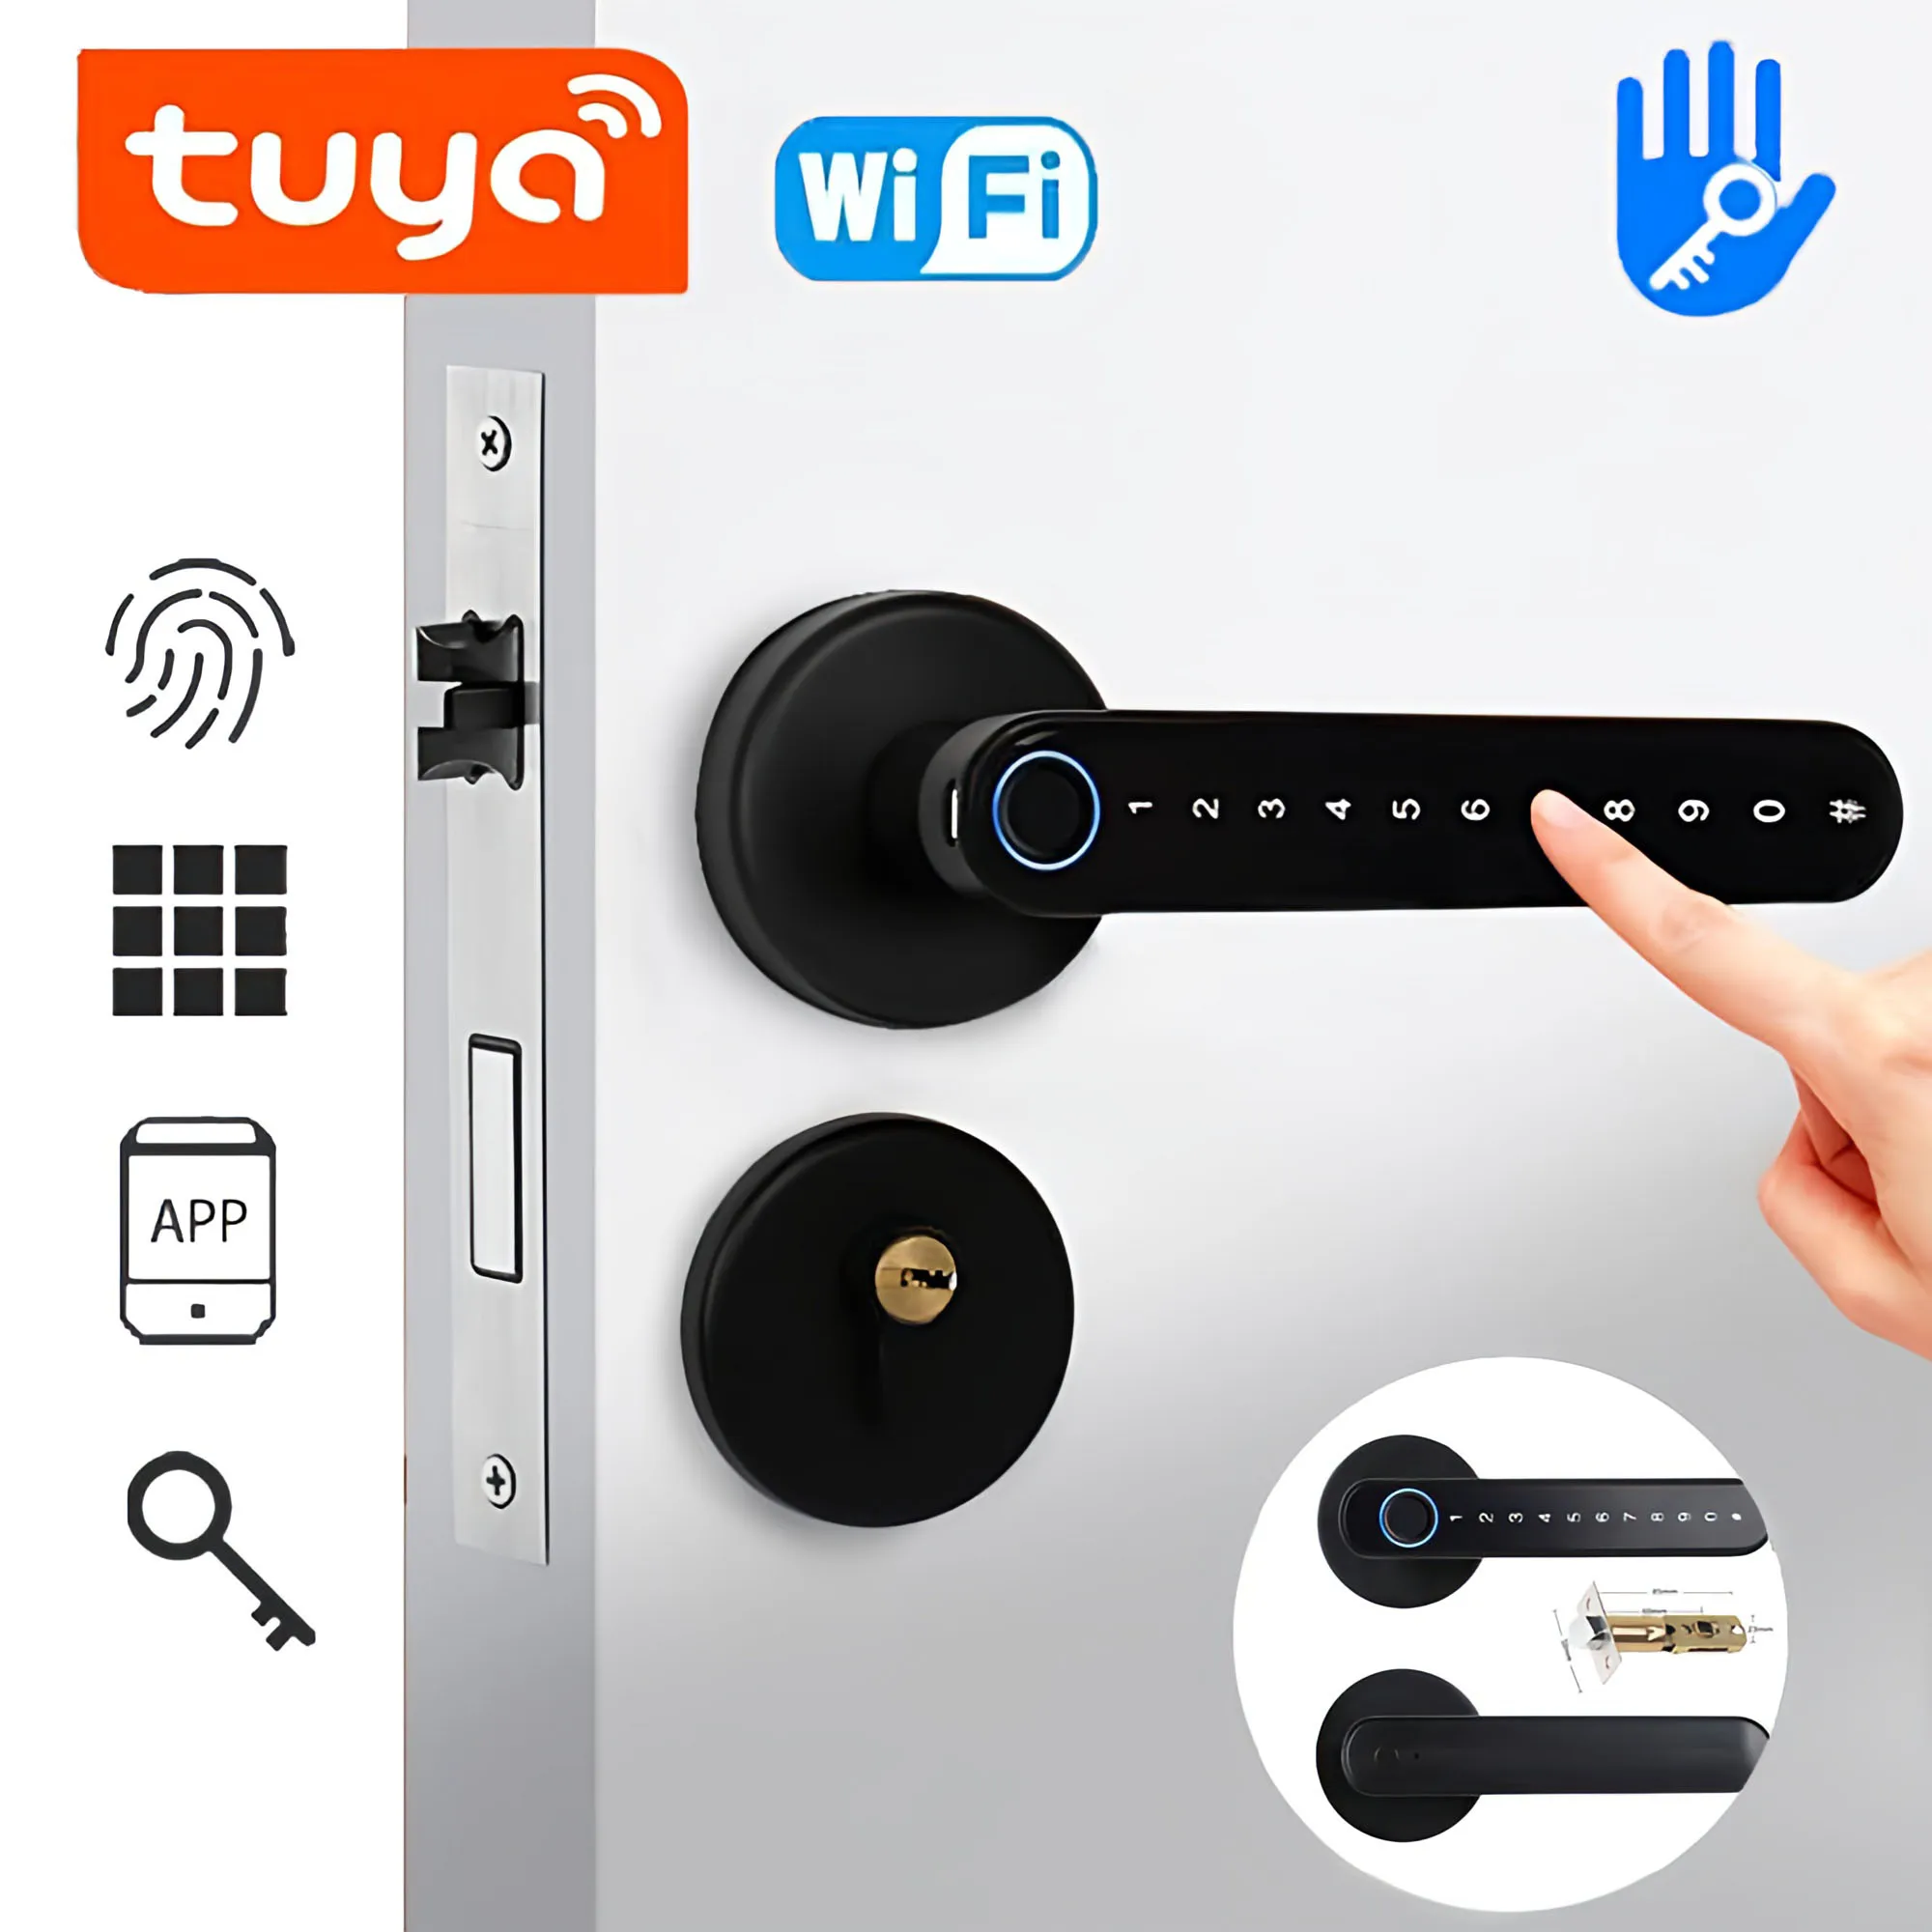 

Biometric Smart Lock Fingerprint Password Electric Digital Lock Tuya TTlock Zinc Alloy Keyless Security Door Handle for Home